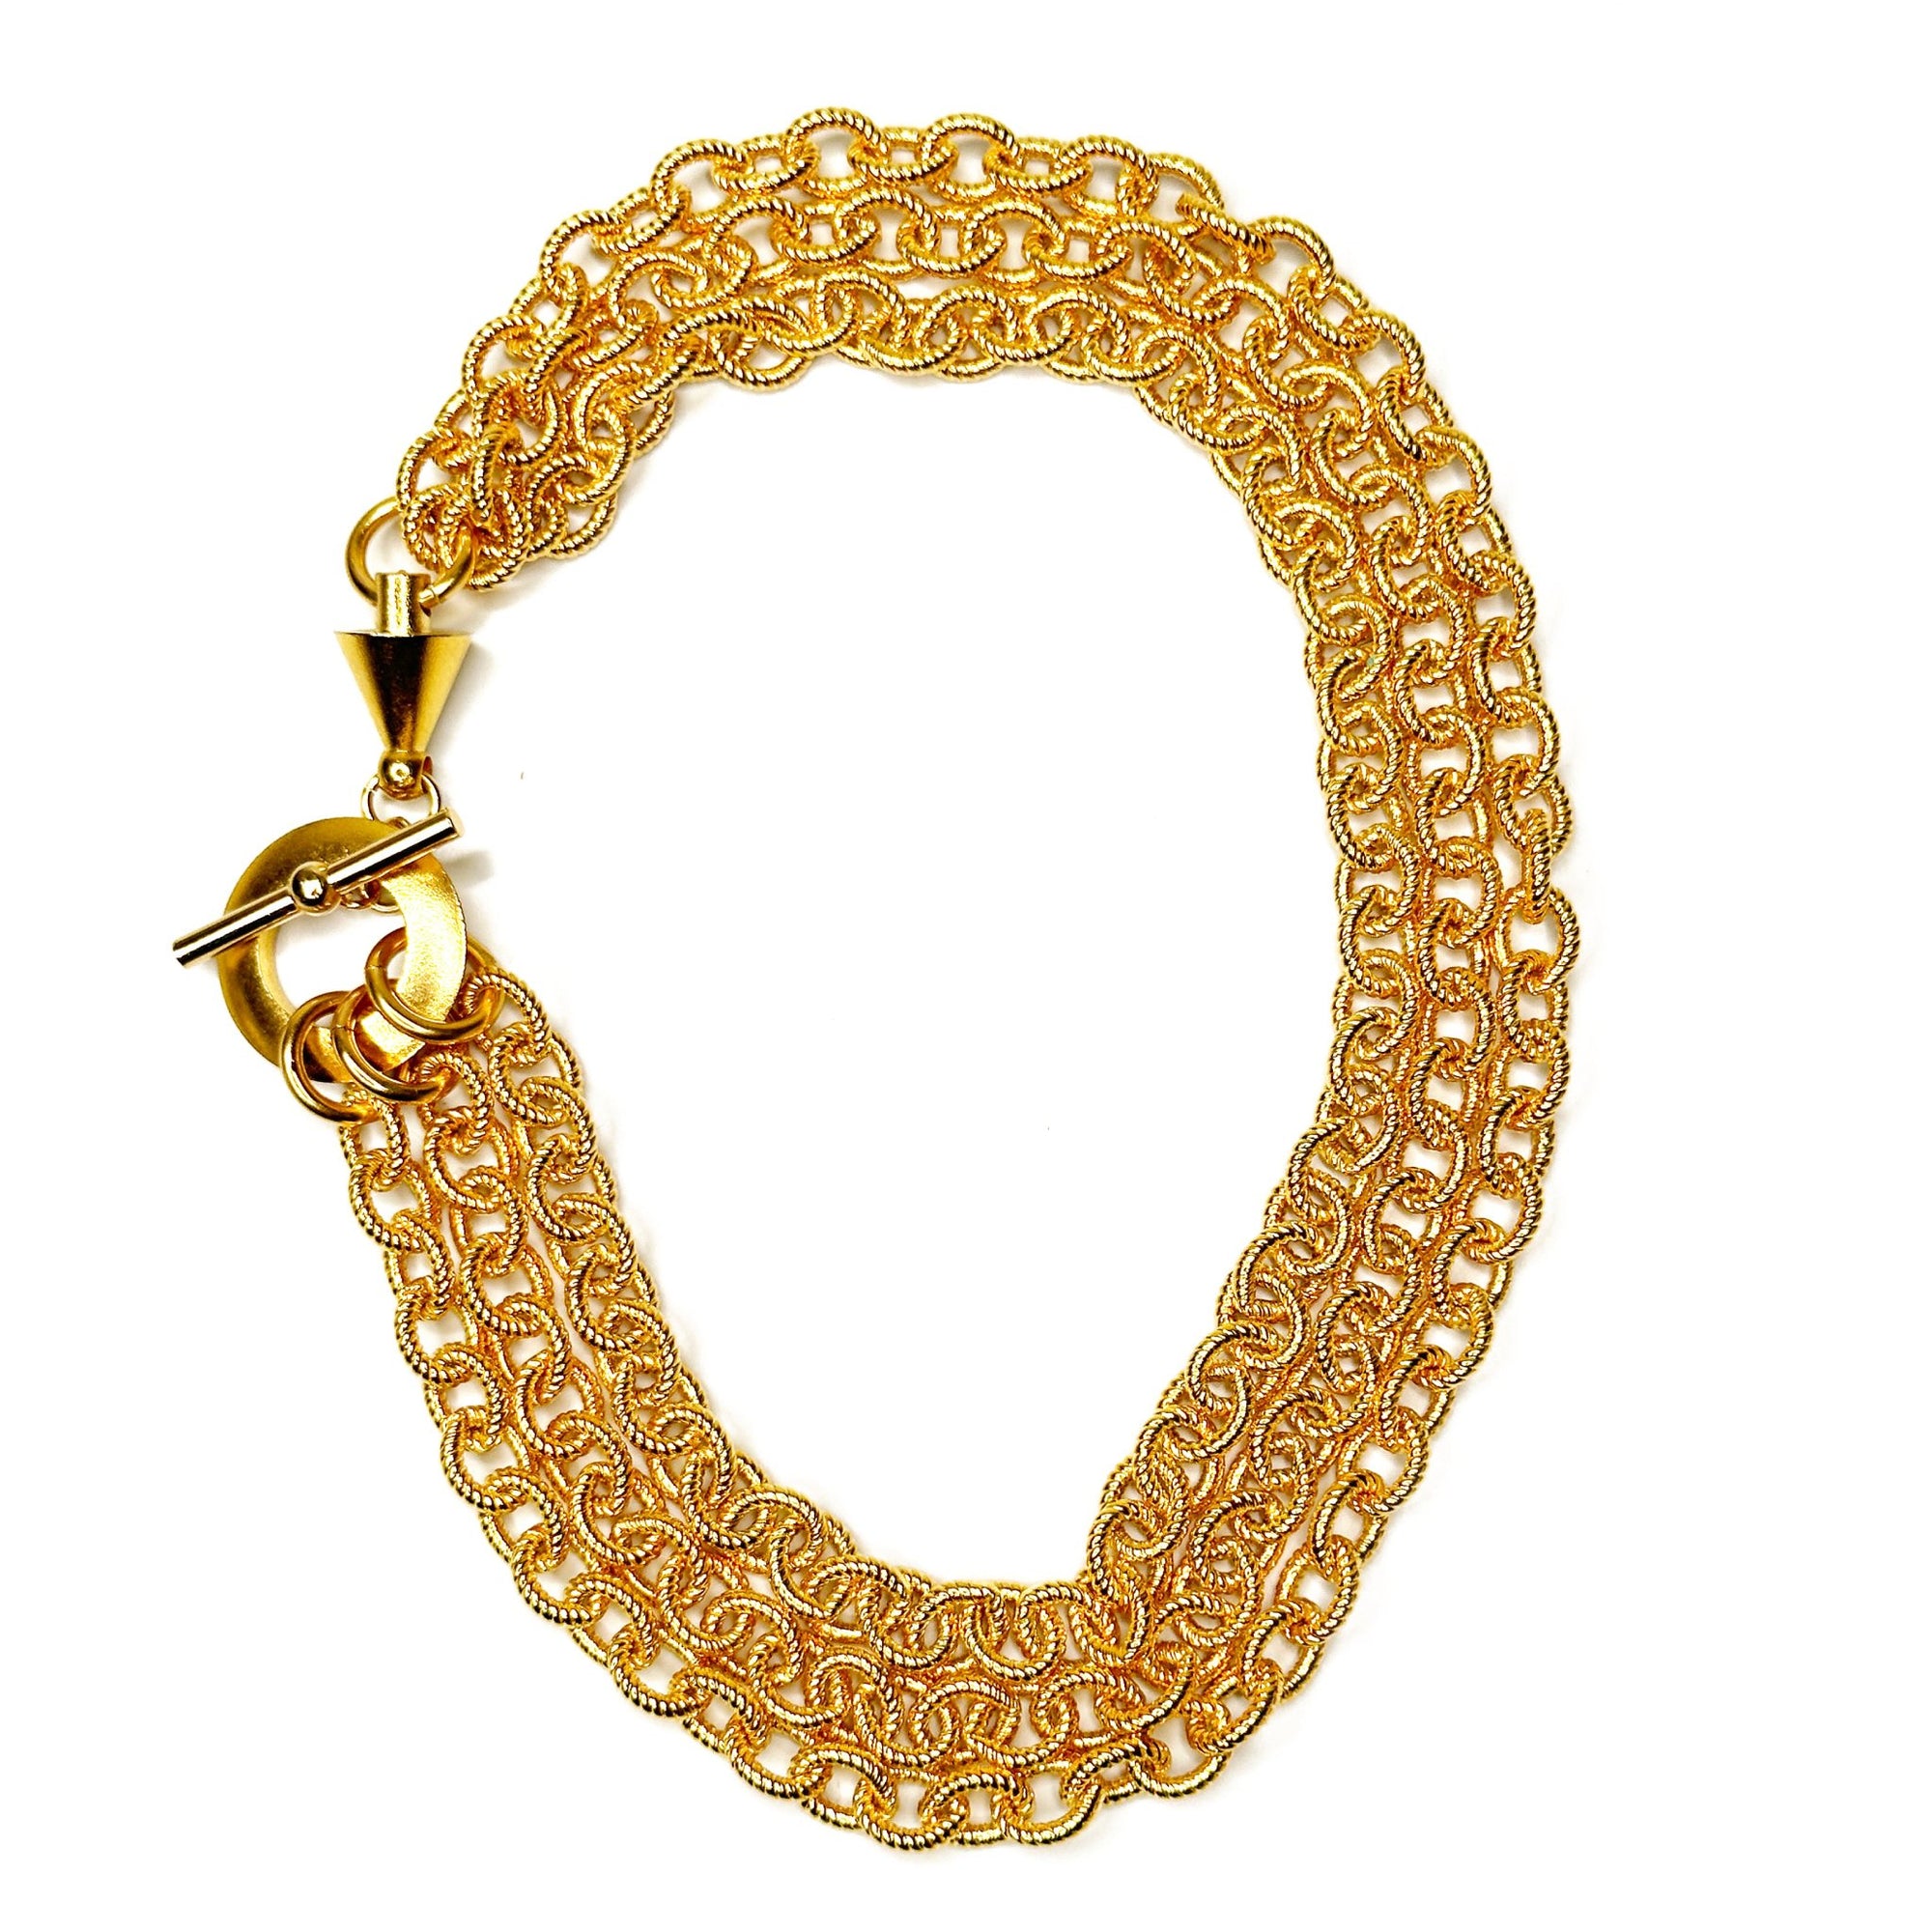 3 Strand Chain Necklace | Erica Zap Designs